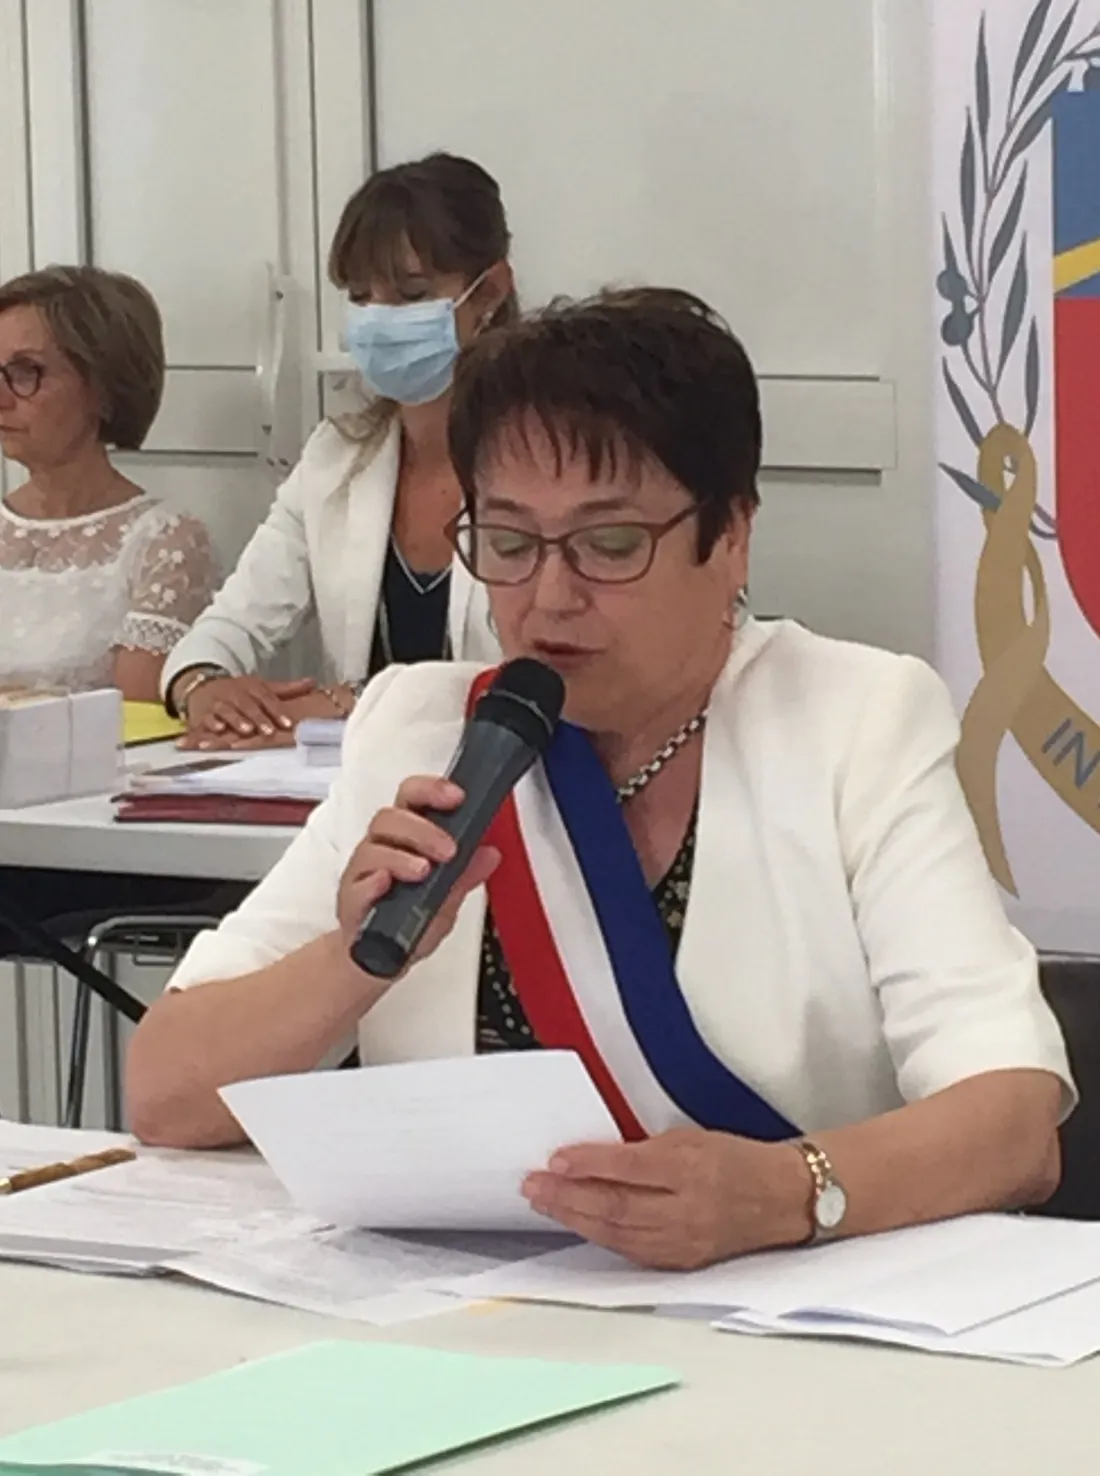 Saint-Martin de Crau: La maire Mme Lexcellent apporte des nouvelles de santé